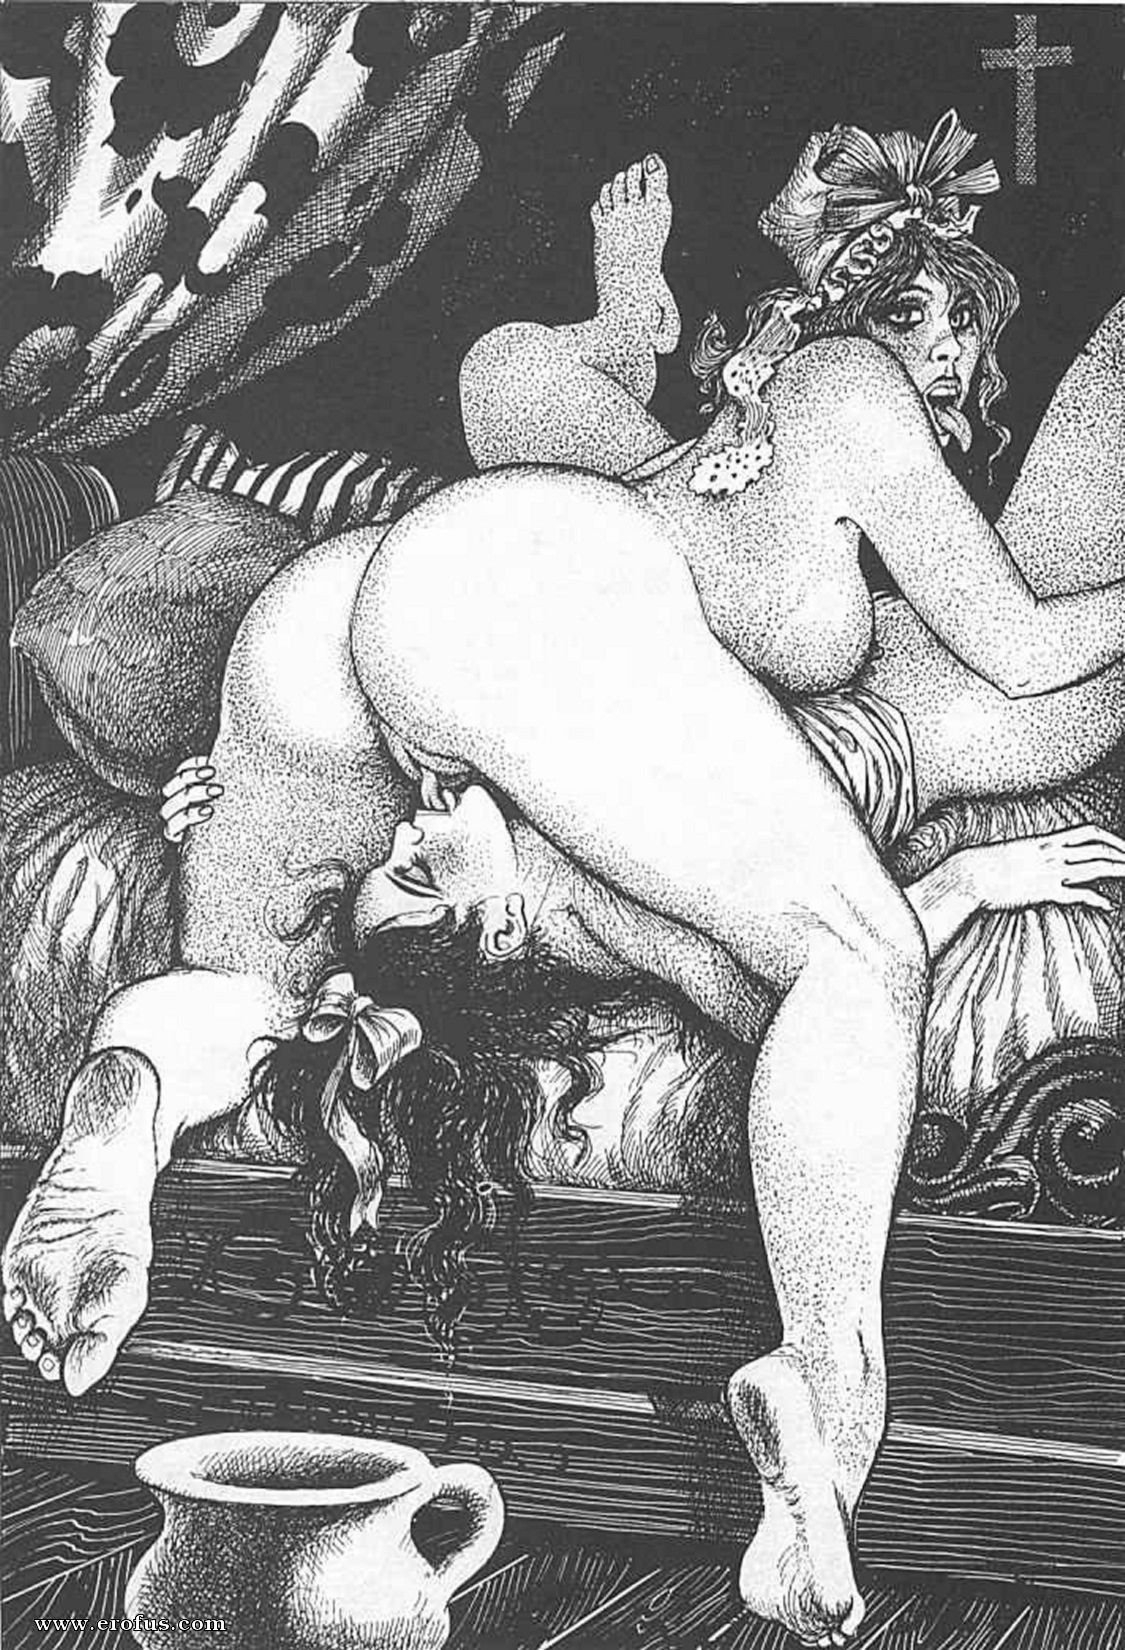 Порно стилизованное под средние века (61 фото) - секс и порно